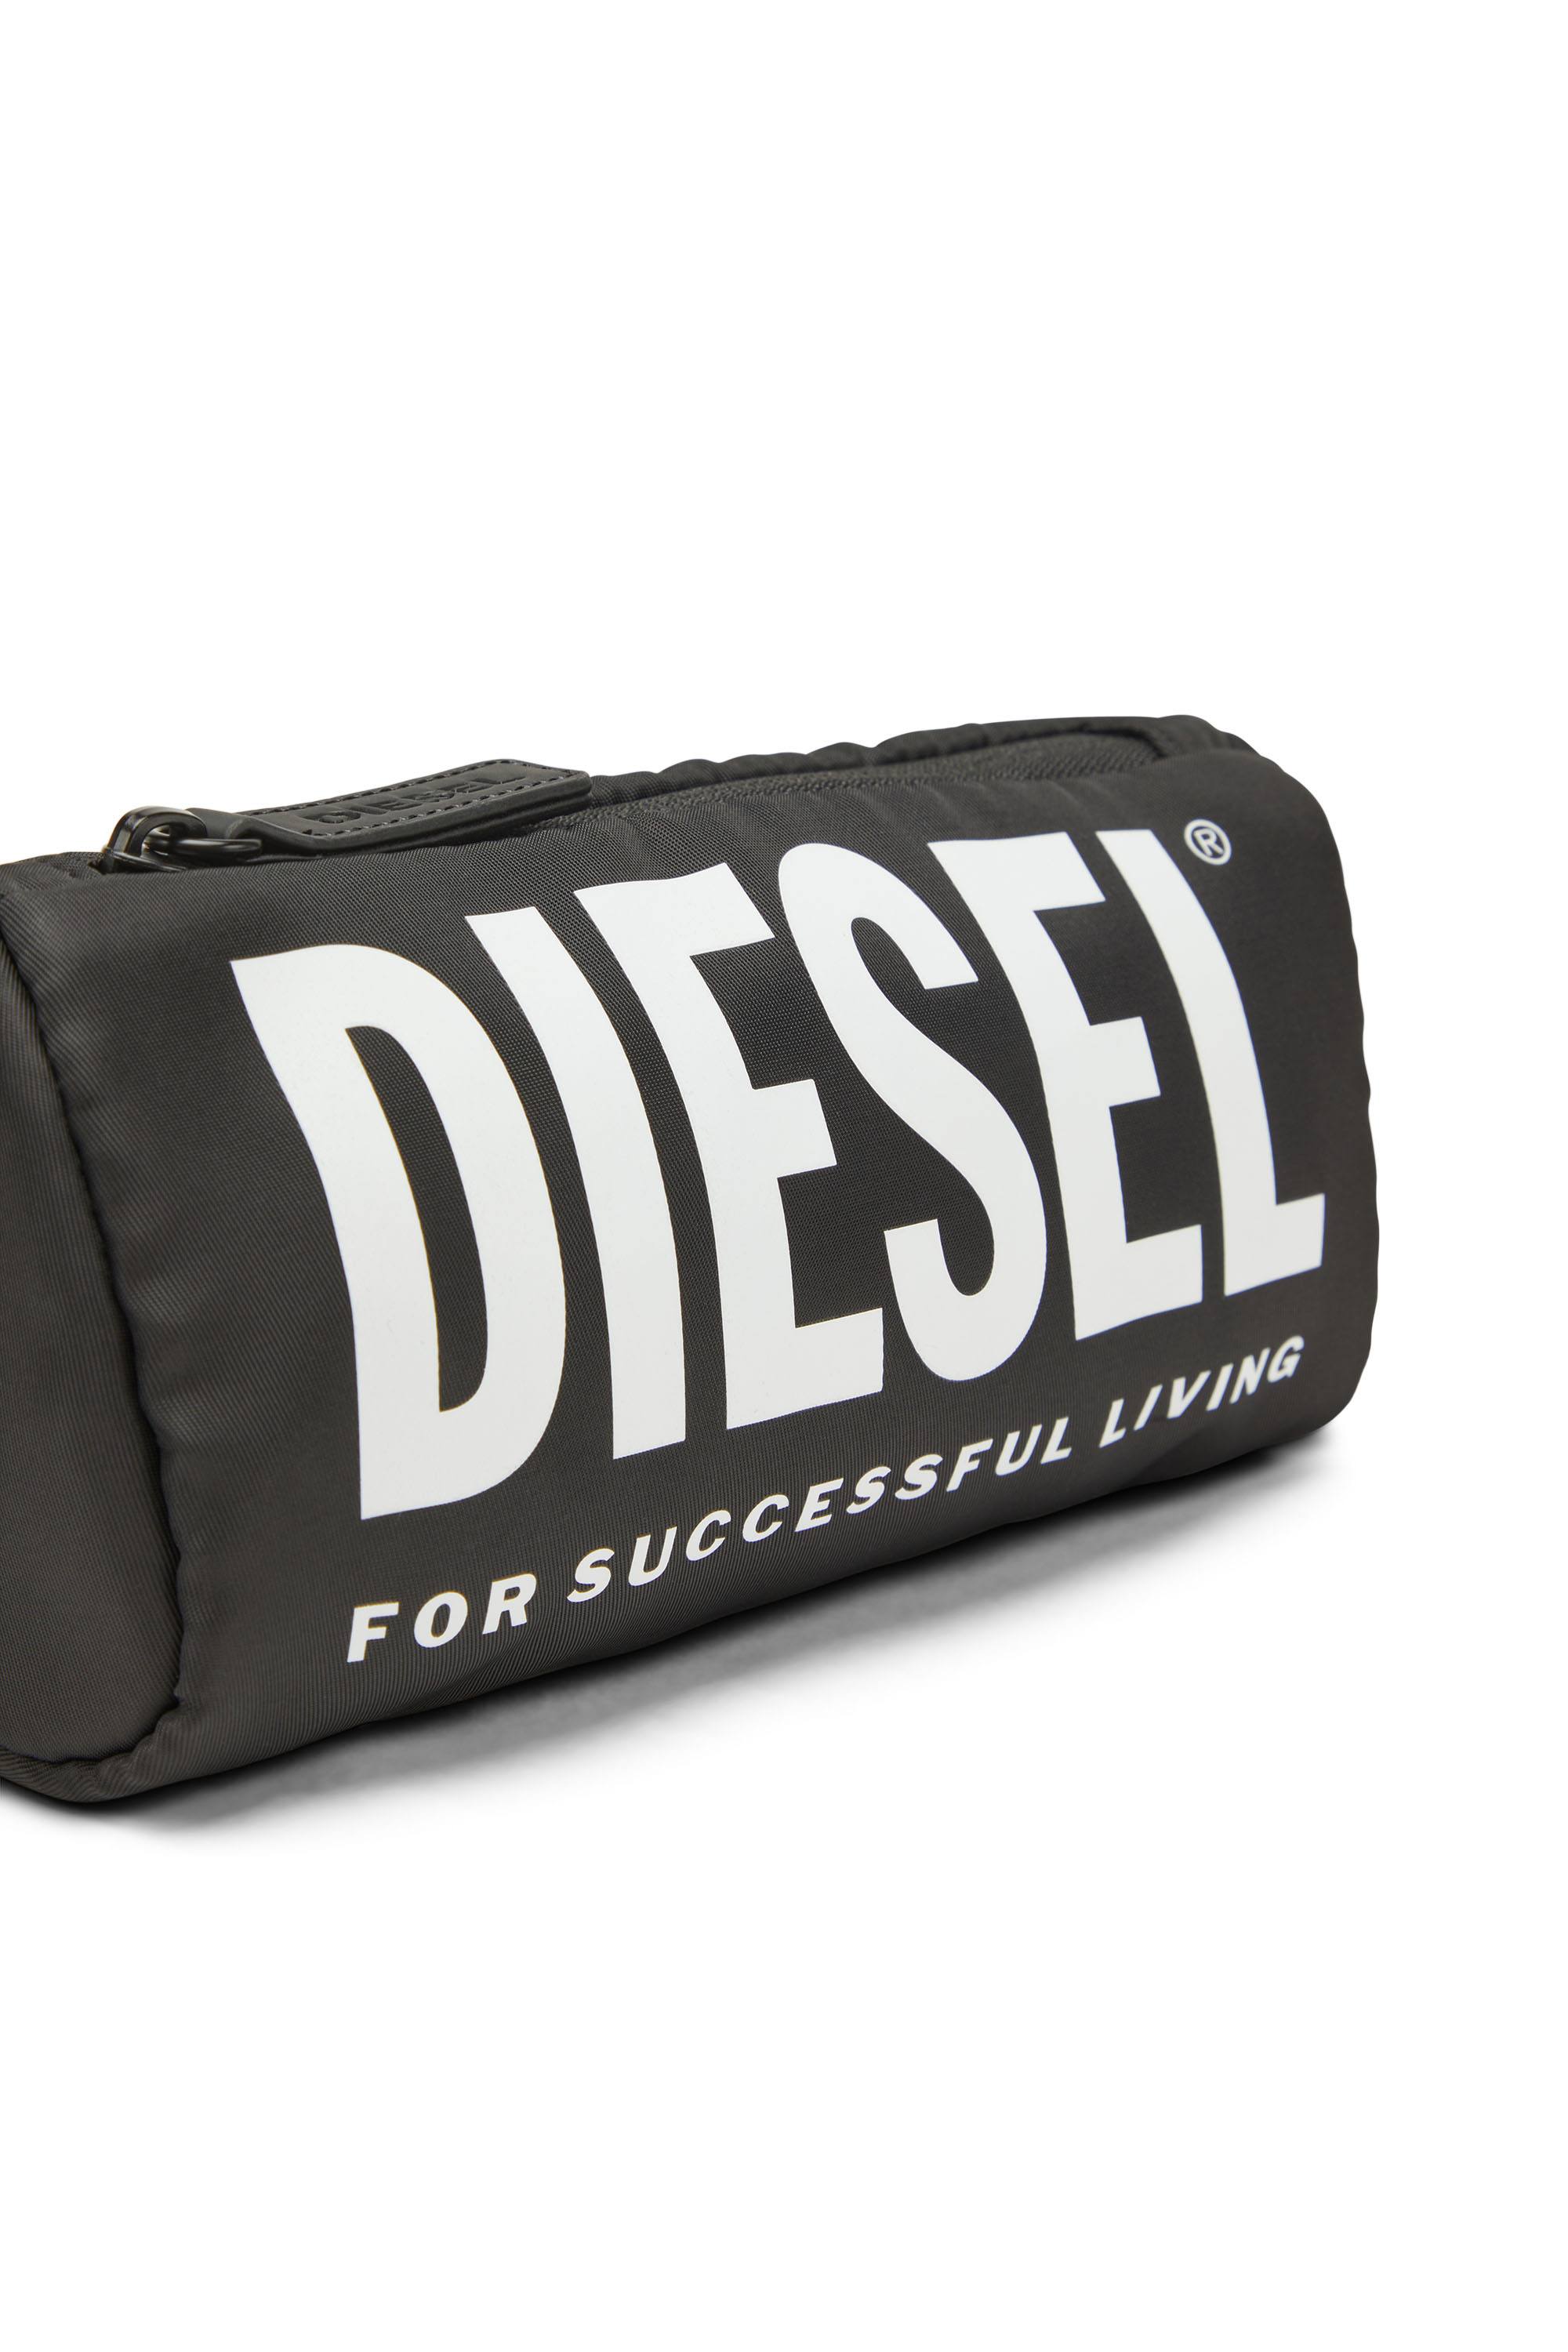 Diesel - WCASELOGO, Black - Image 4